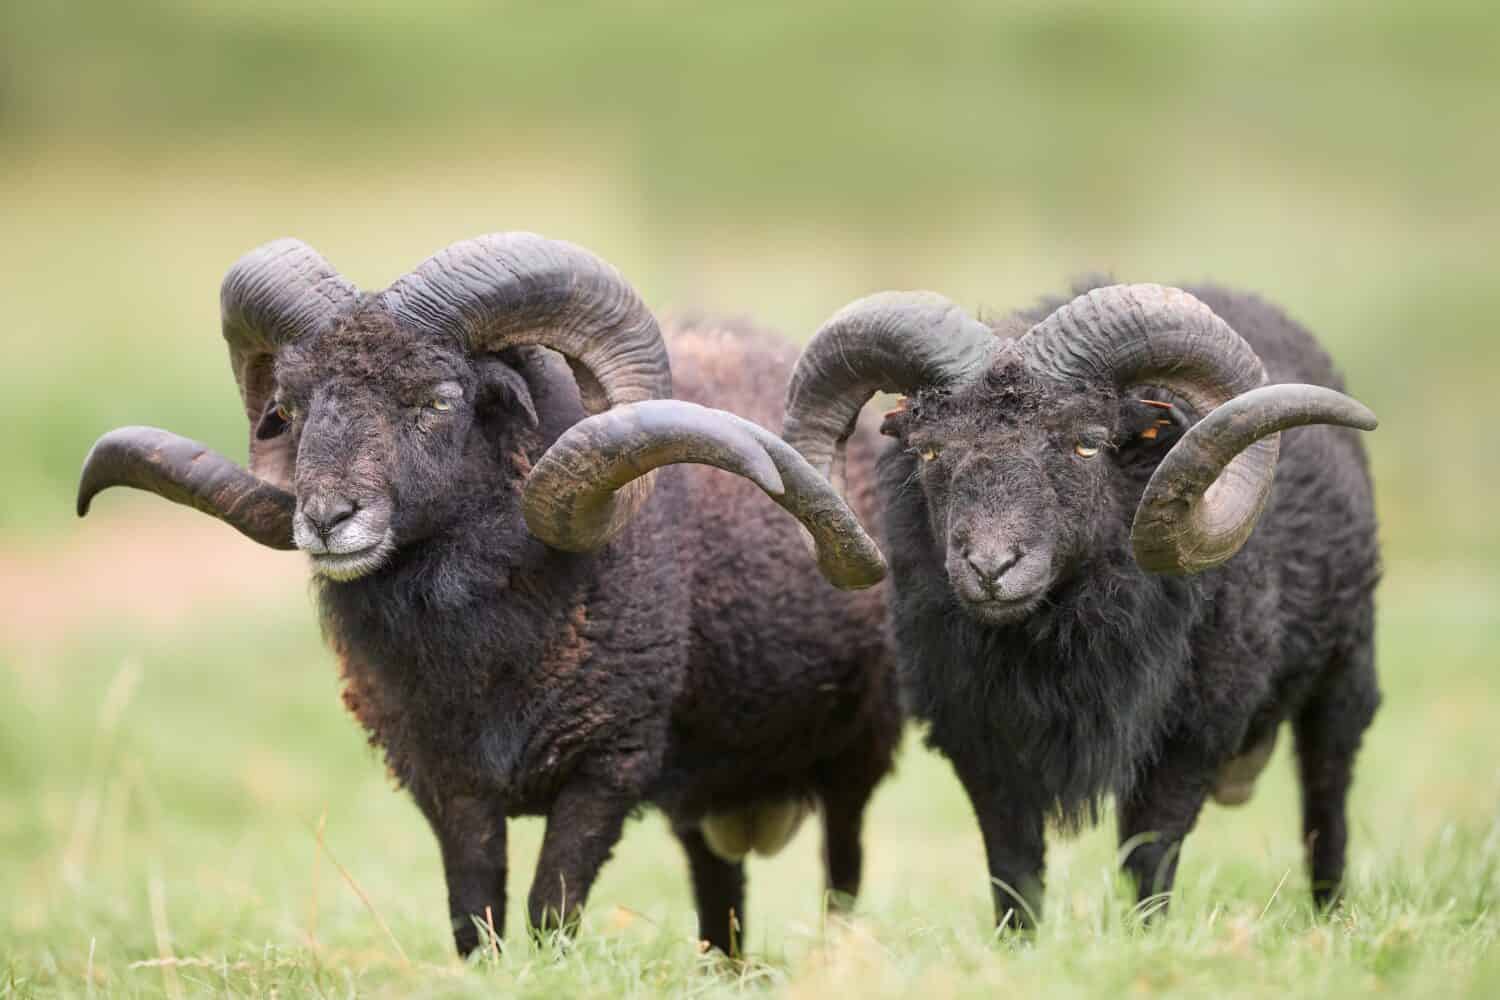 Sheep wool contains keratin